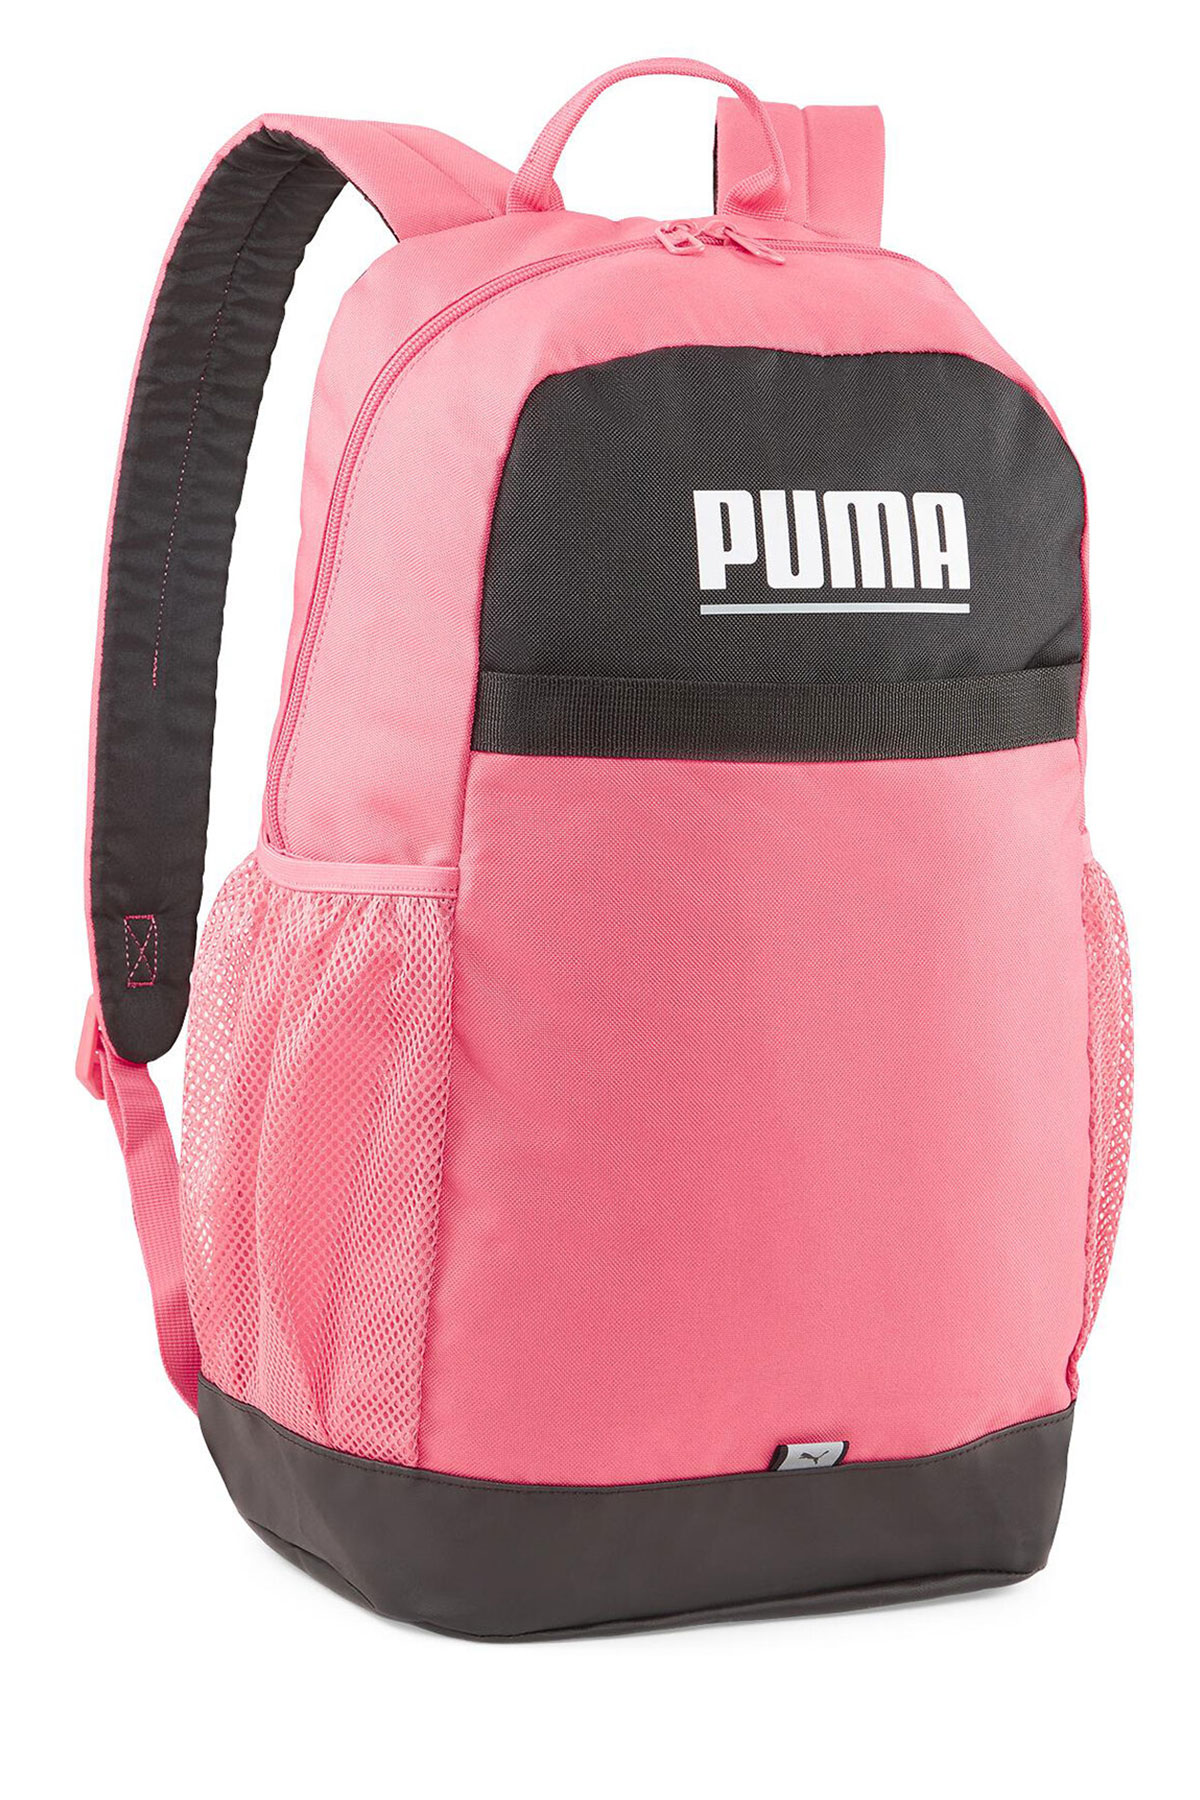 Plus Backpack Unisex Puma Pembe Sırt Çantası 